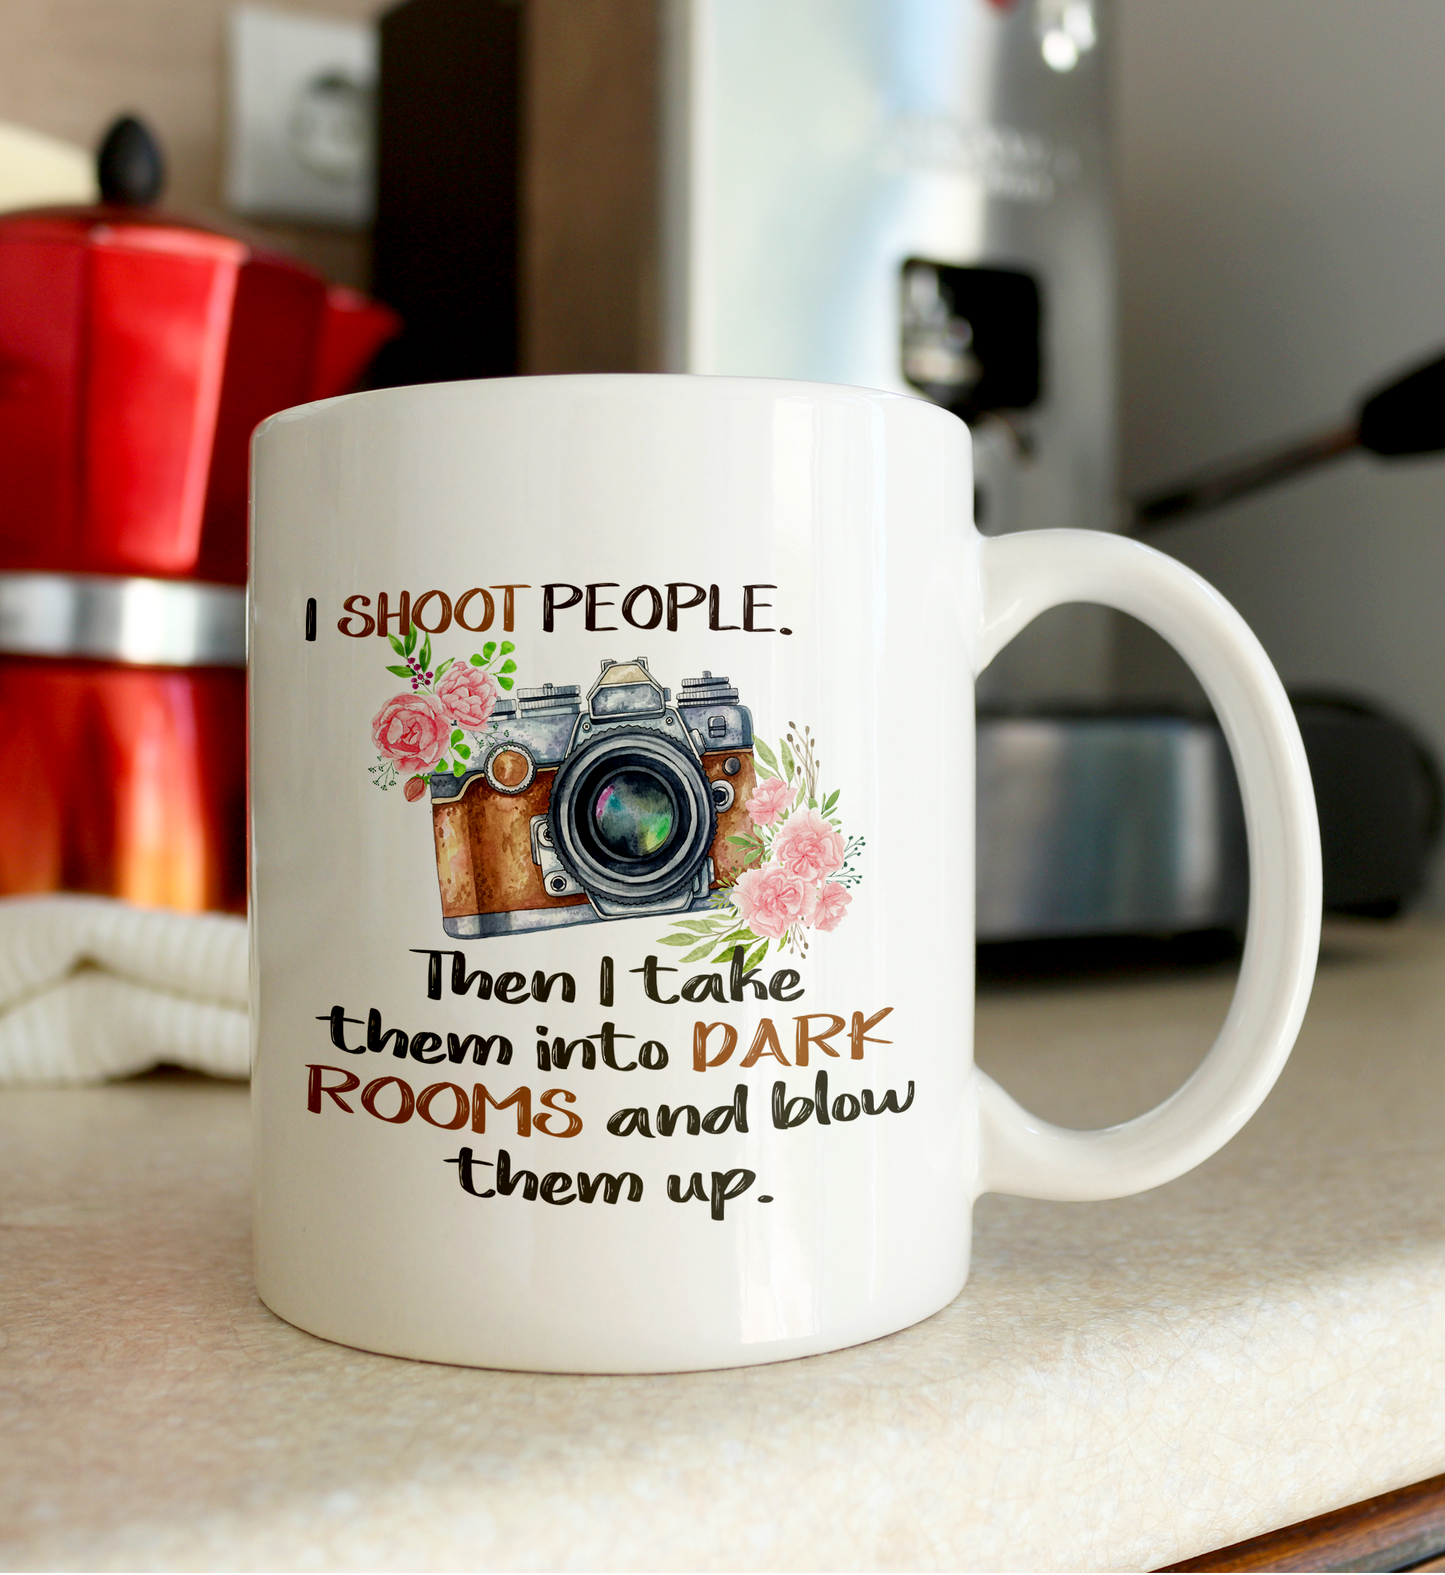  I Shoot People Photography Mug by Free Spirit Accessories sold by Free Spirit Accessories